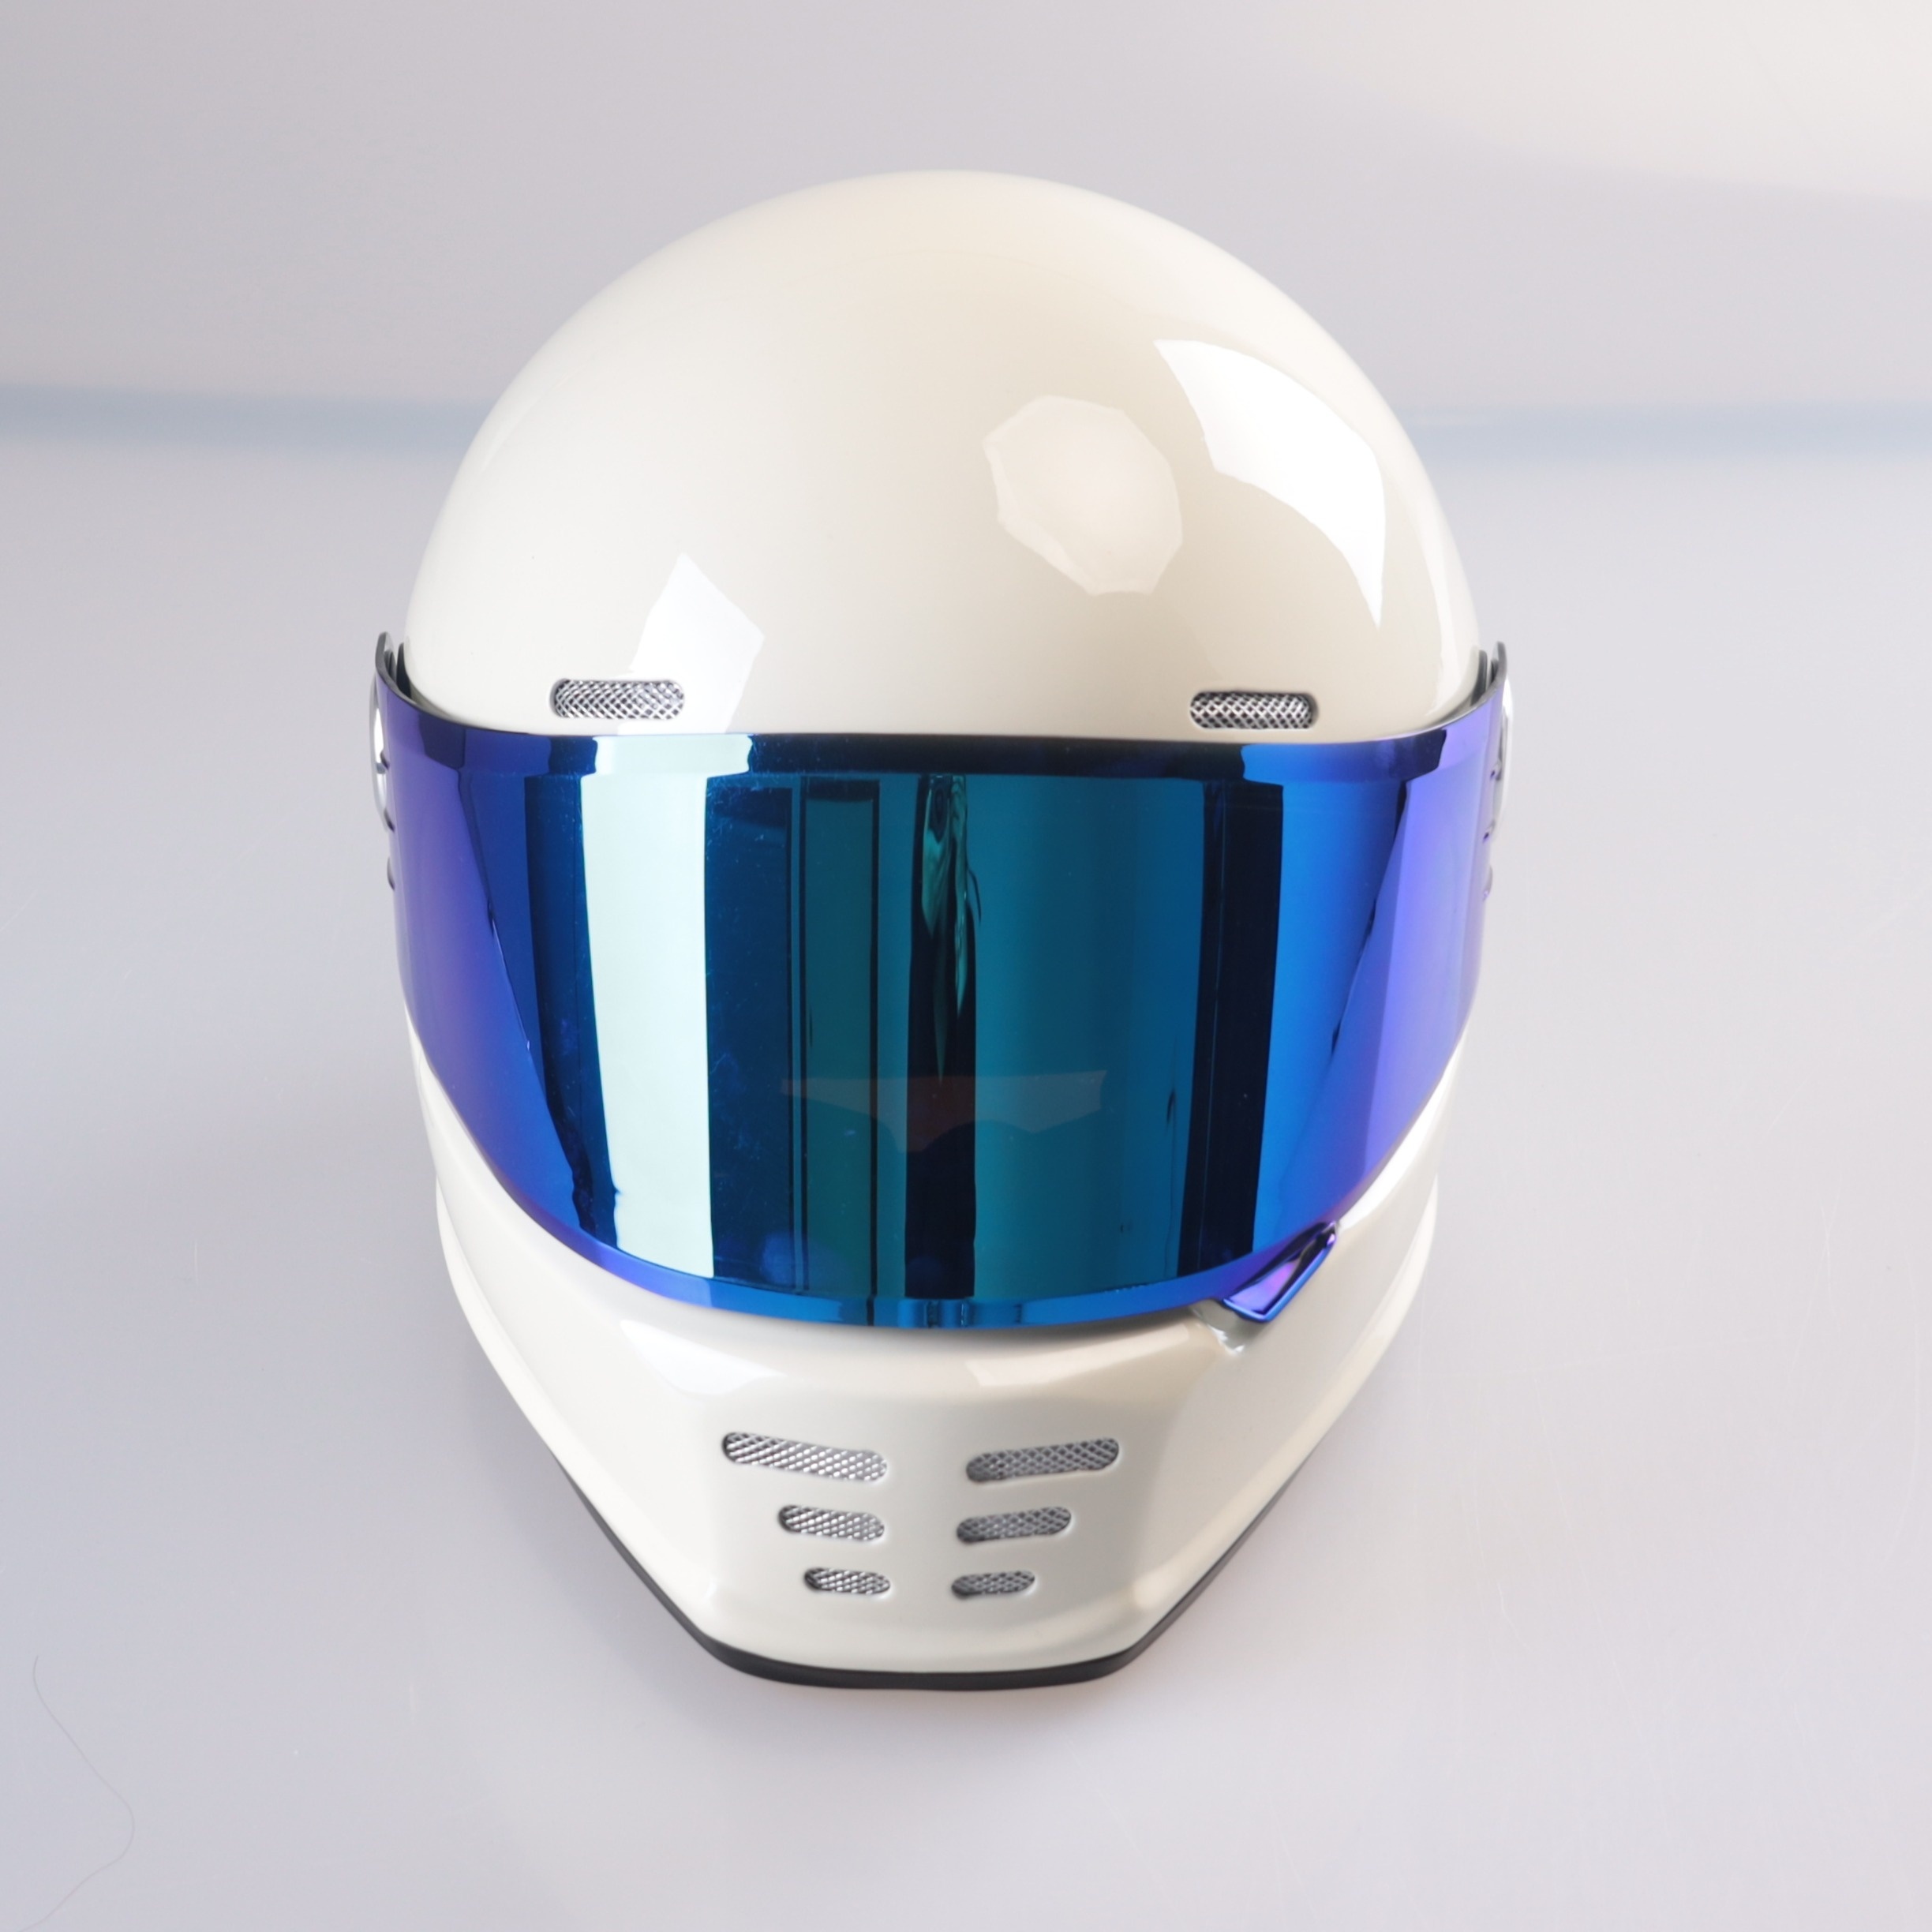 Casco Para Moto Mujer Hombre Abatible Deportivo Certificado Color Azul mate  Tamaño del casco XL